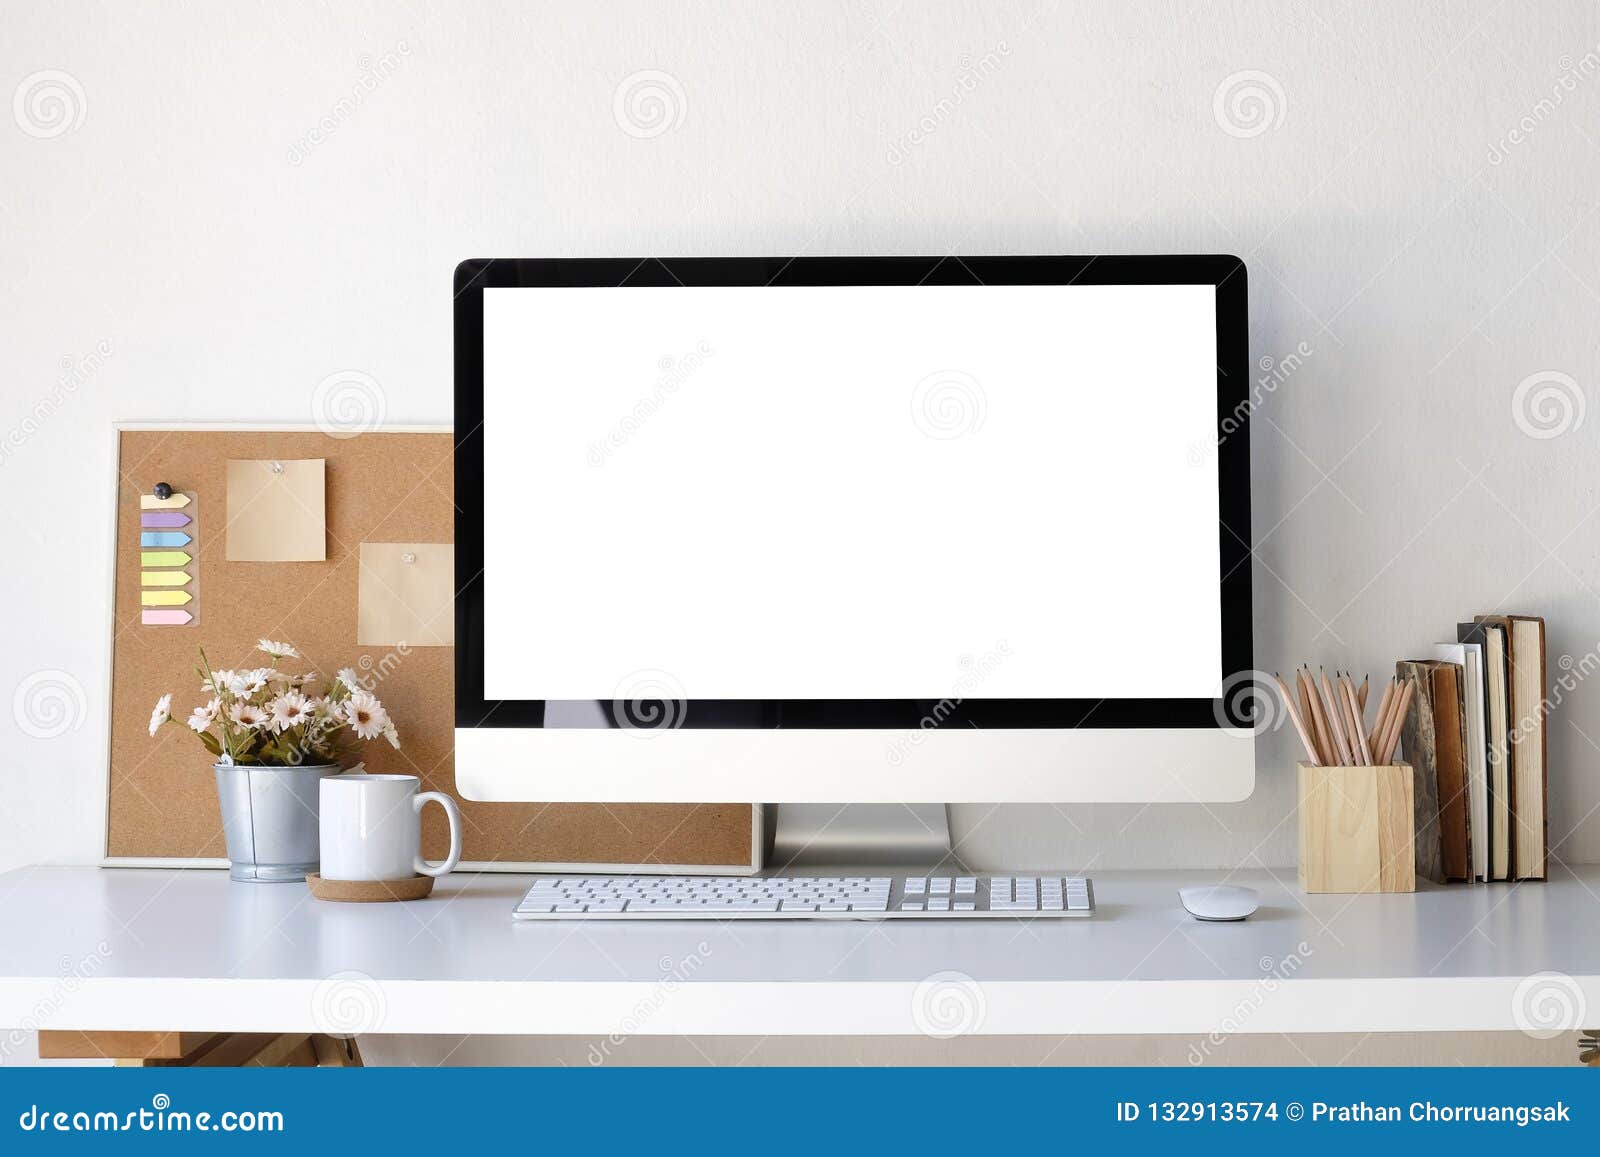 Download Workplace Mockup Concept. Mock Up Home Decor Desktop ...